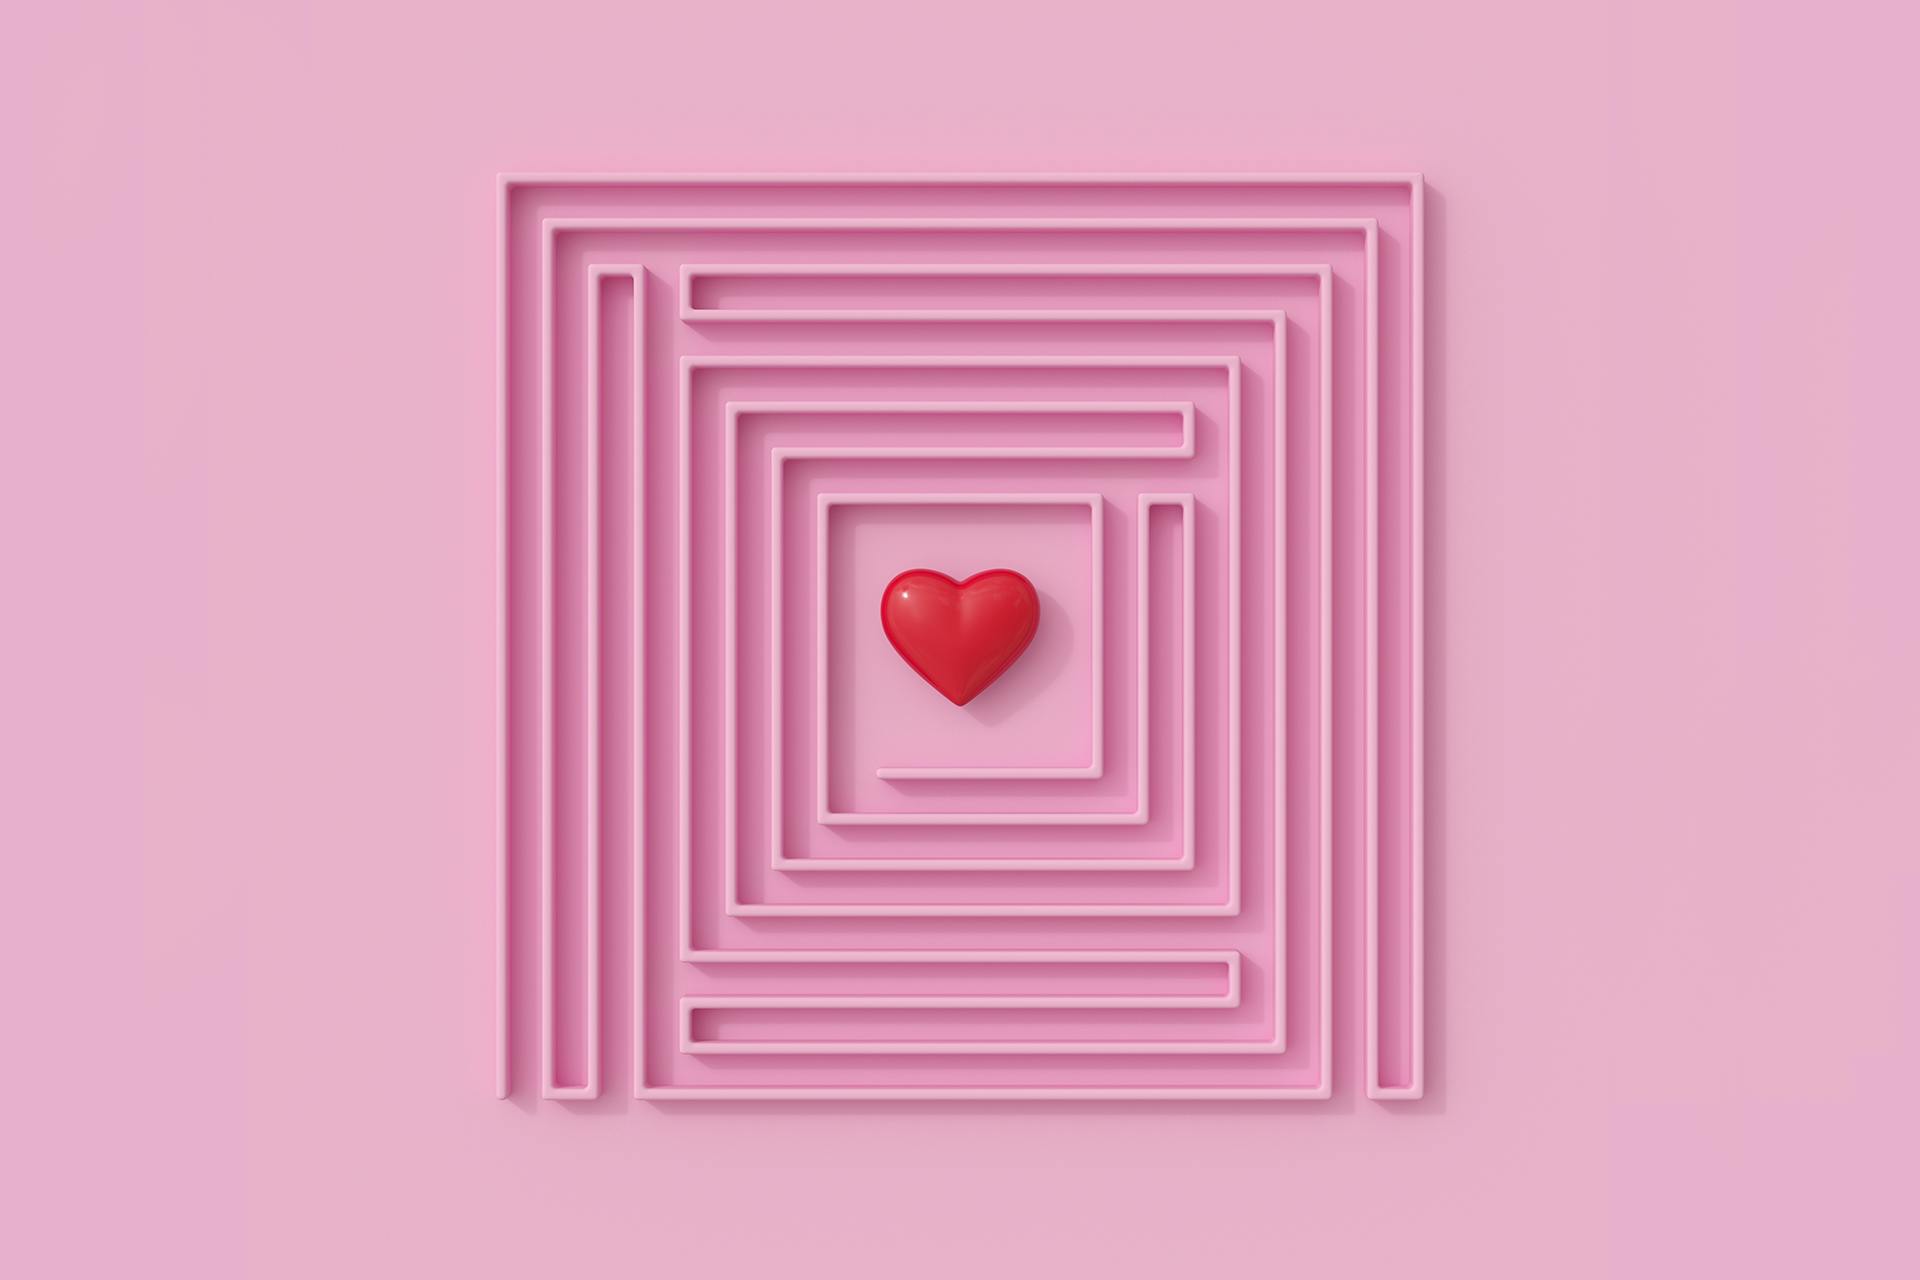 Kuinka hyödyntää brändin puolestapuhujia markkinoinnissa? Kuvassa on labyrintti, jonka keskellä on sydän.